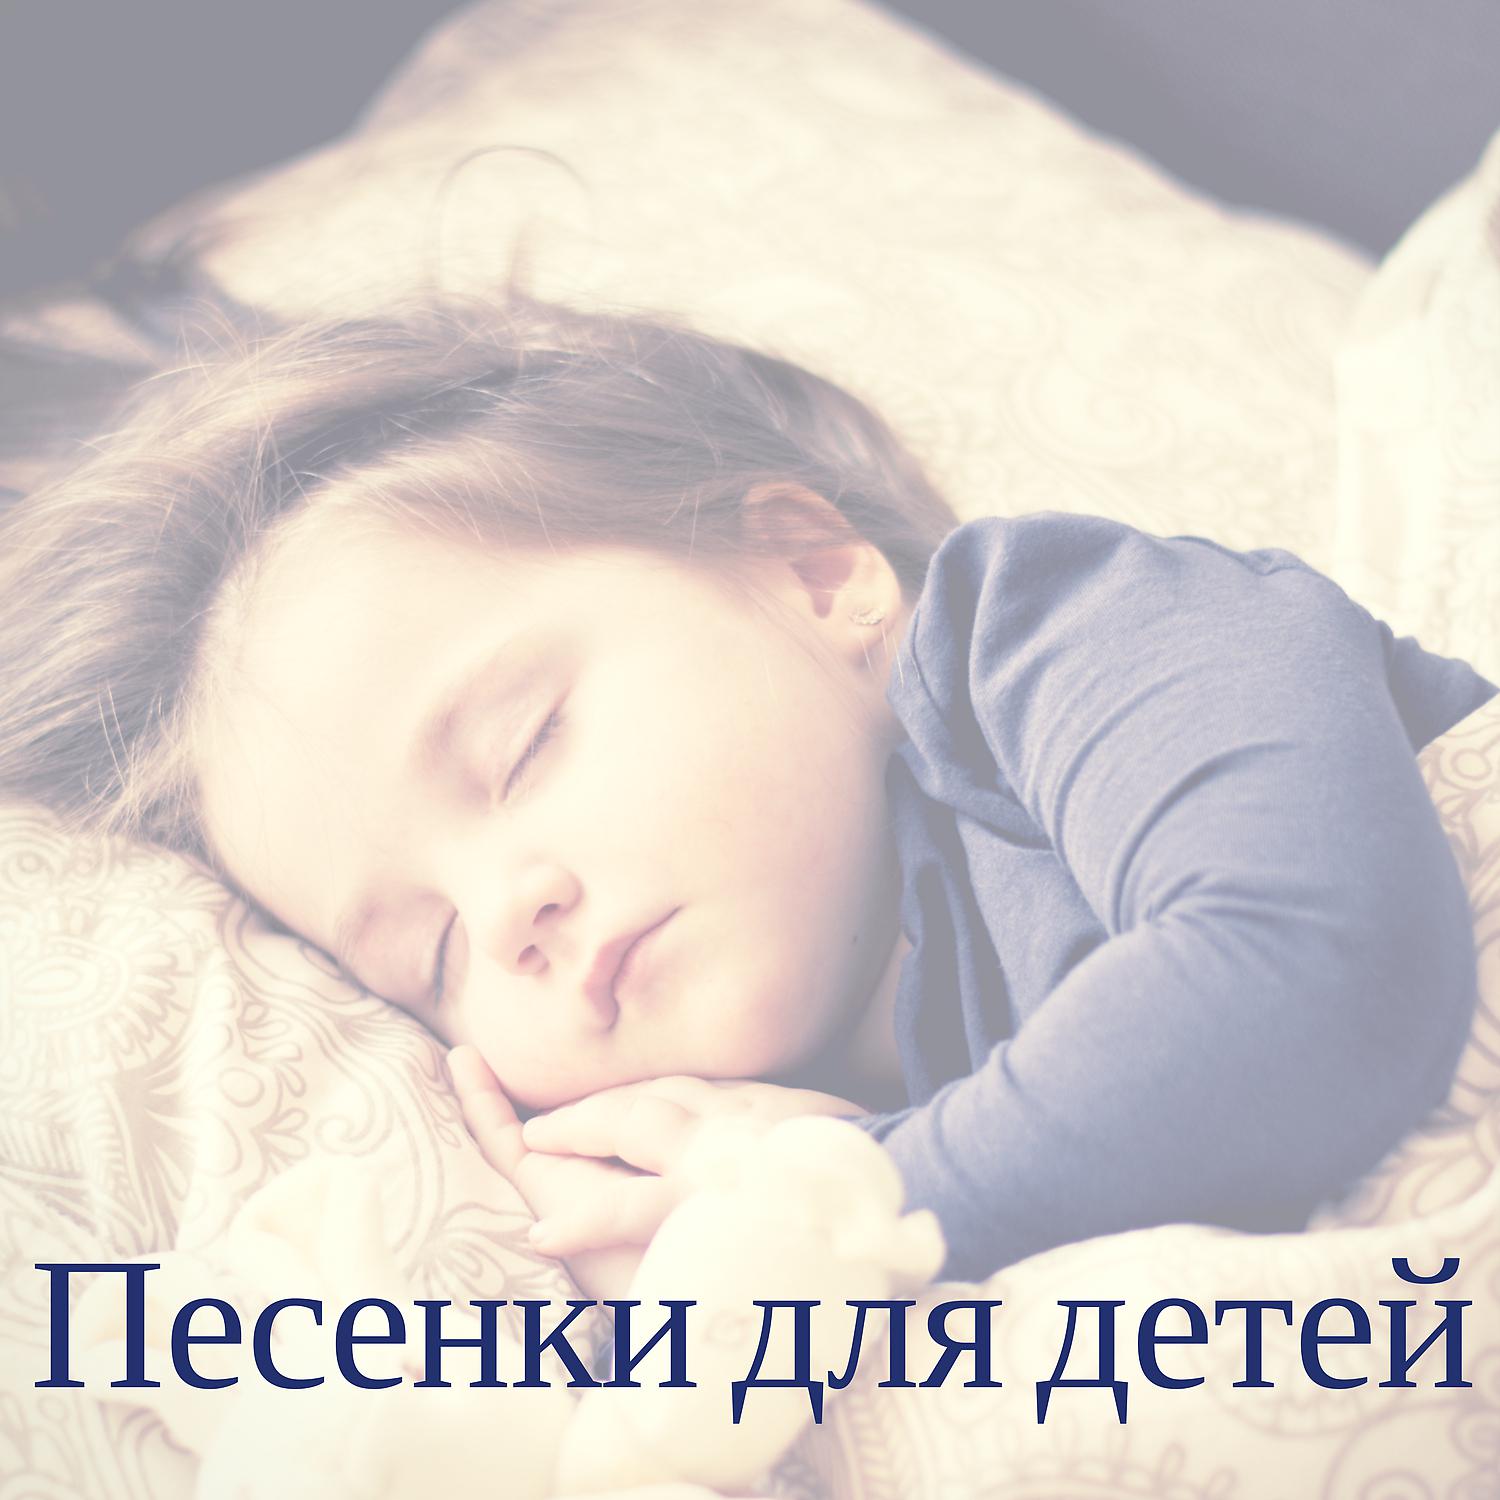 Шум детские слушать. Для сна Колыбельная звук. Спящий ребенок в колыбели. Колыбельная для малышей звуки природы. Колыбель для засыпания аудио.